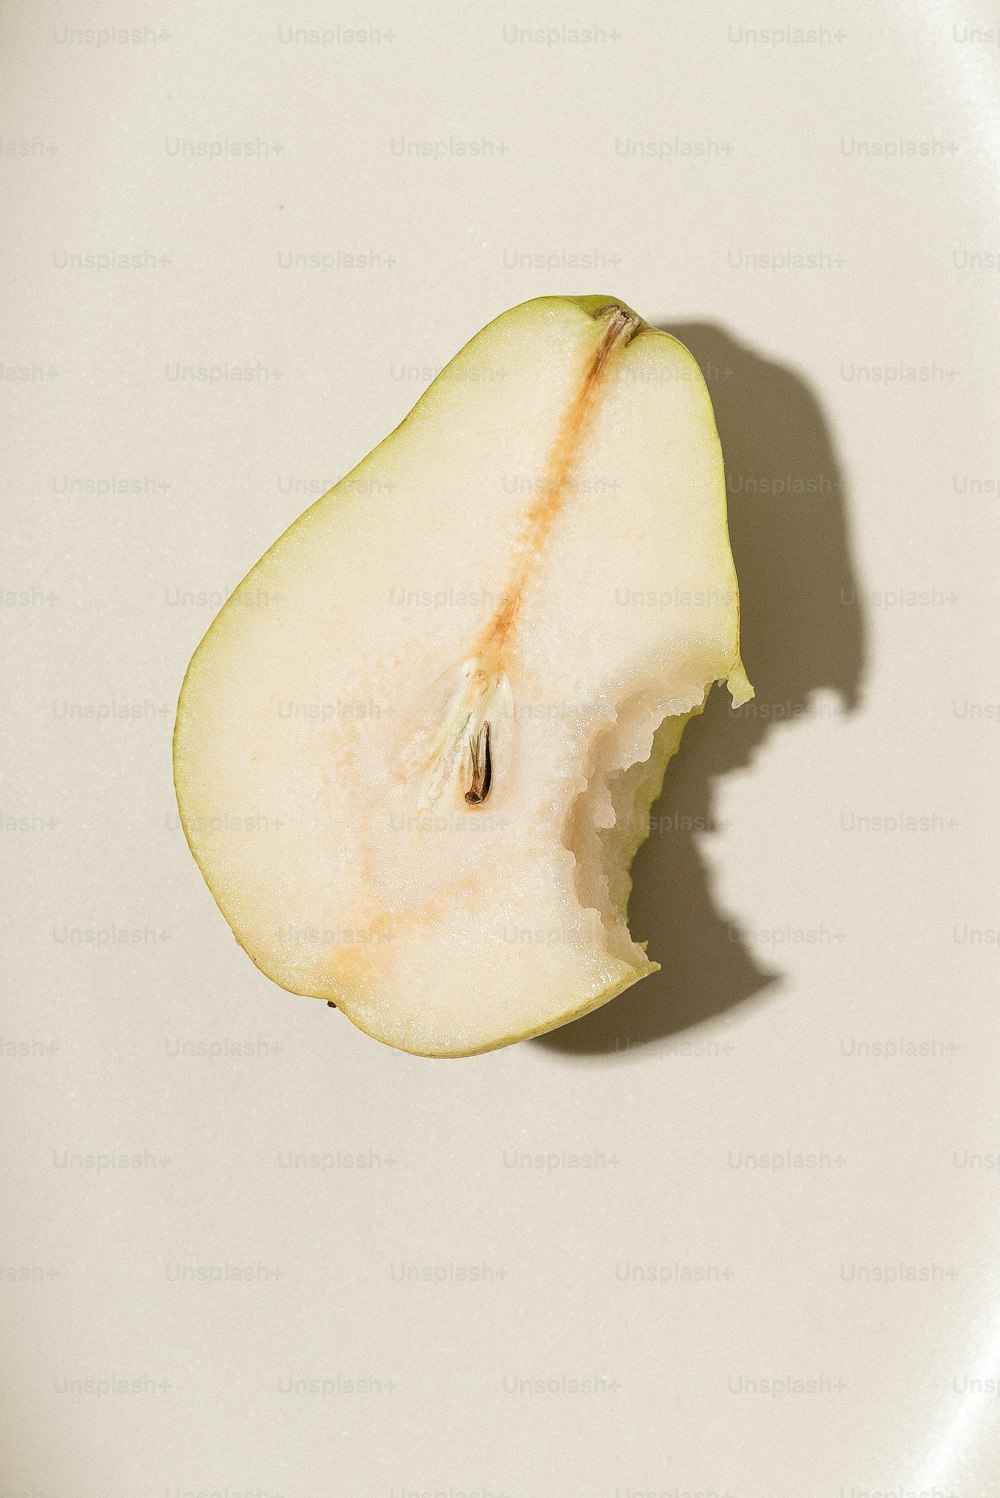 una mela mezza mangiata seduta sopra un piatto bianco